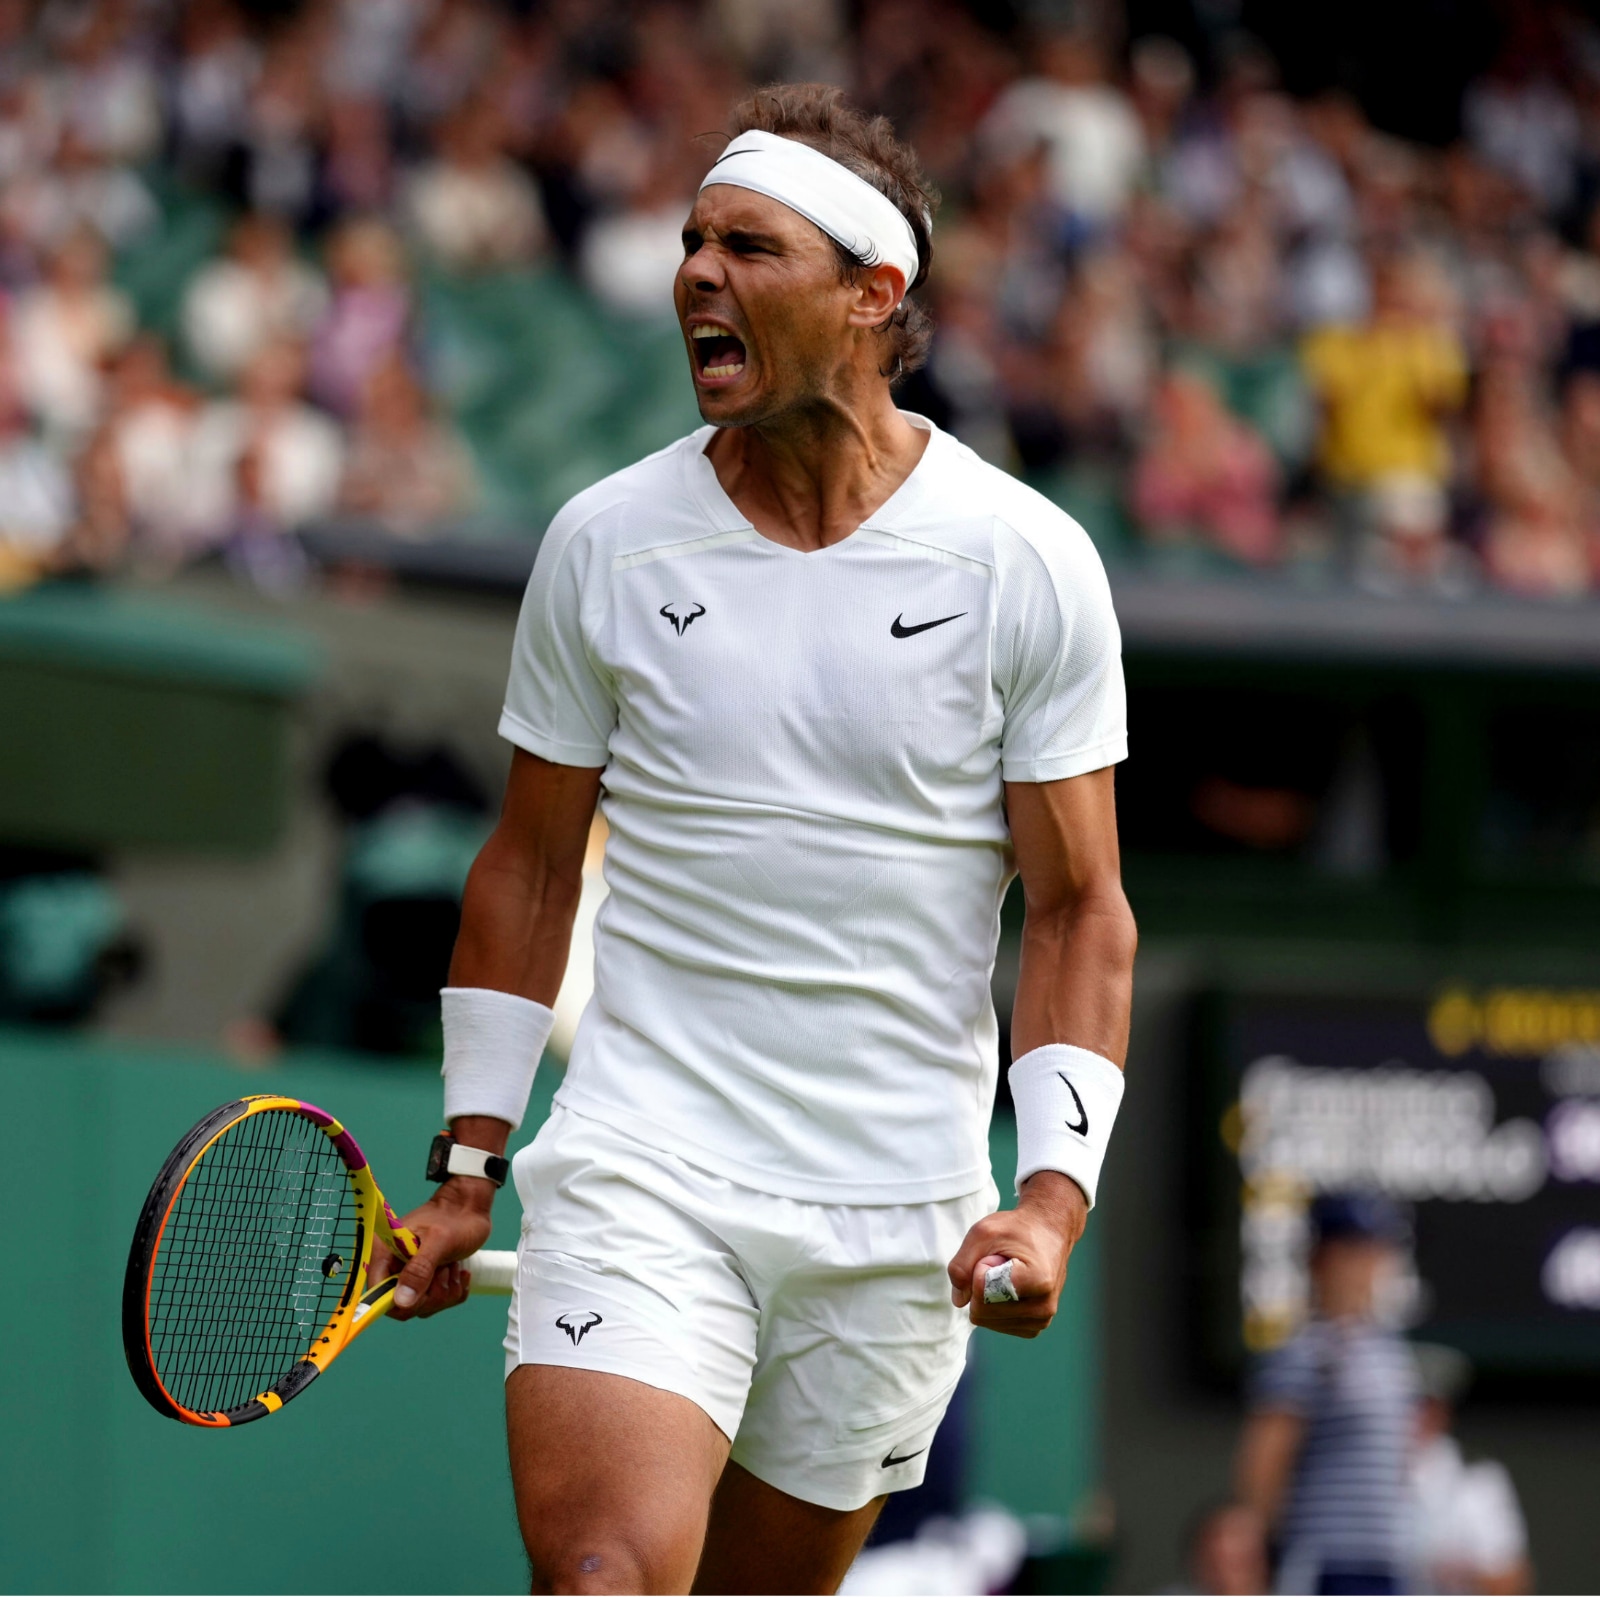 Wimbledon 2022 Rafael Nadal Overcomes Cerundolo Scare to Reach Second Round